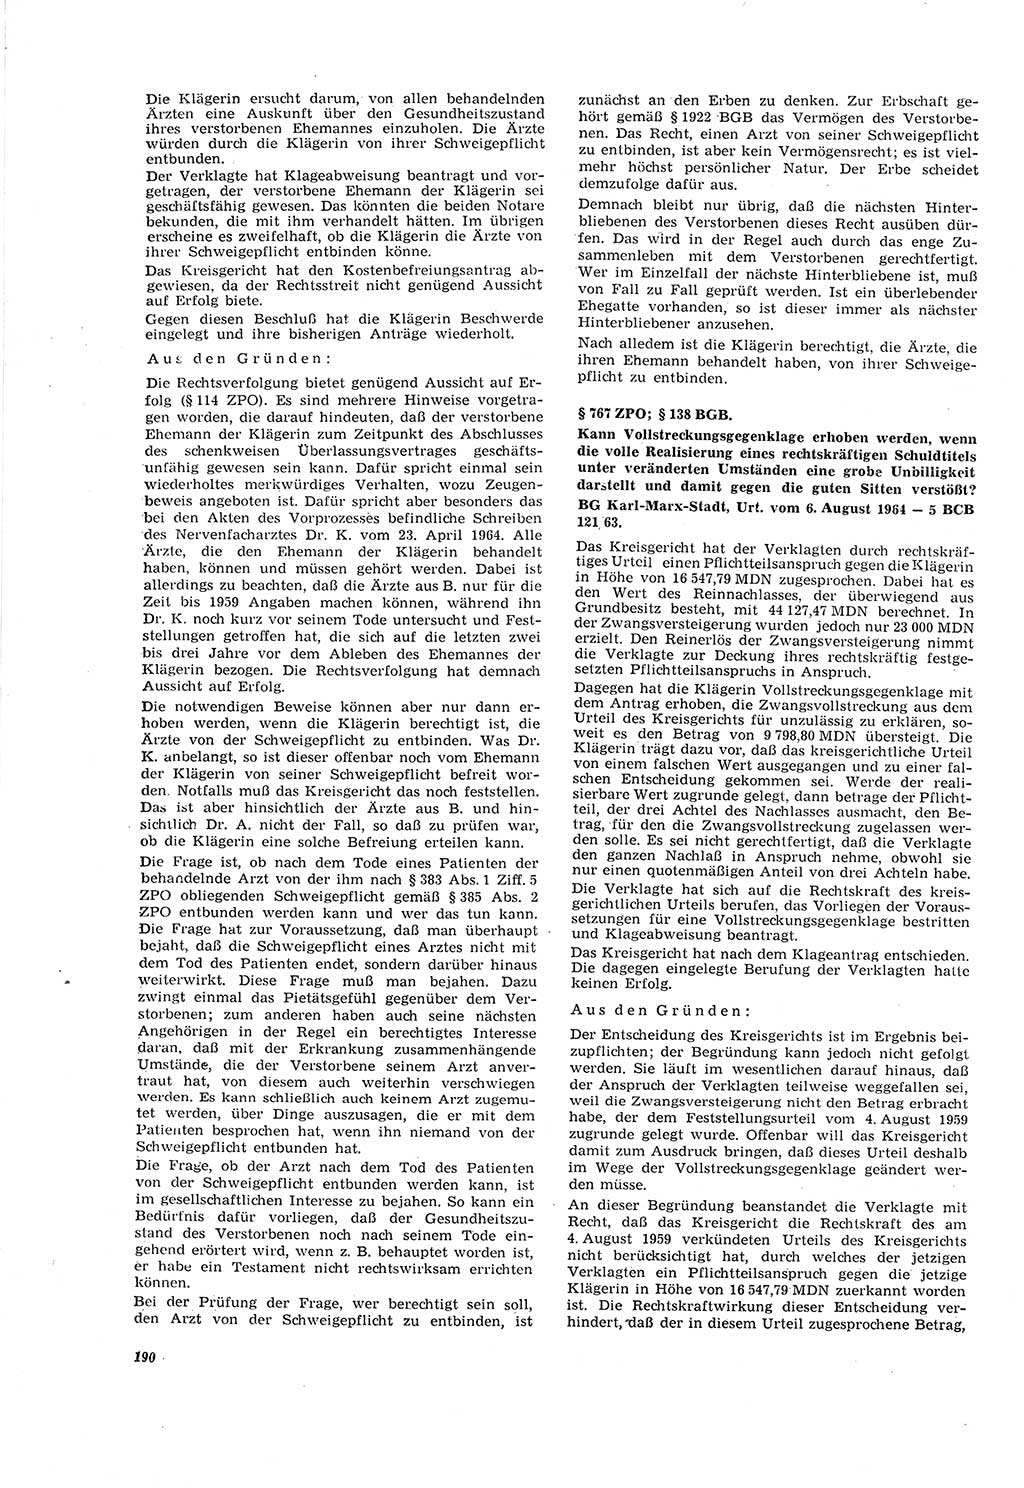 Neue Justiz (NJ), Zeitschrift für Recht und Rechtswissenschaft [Deutsche Demokratische Republik (DDR)], 20. Jahrgang 1966, Seite 190 (NJ DDR 1966, S. 190)